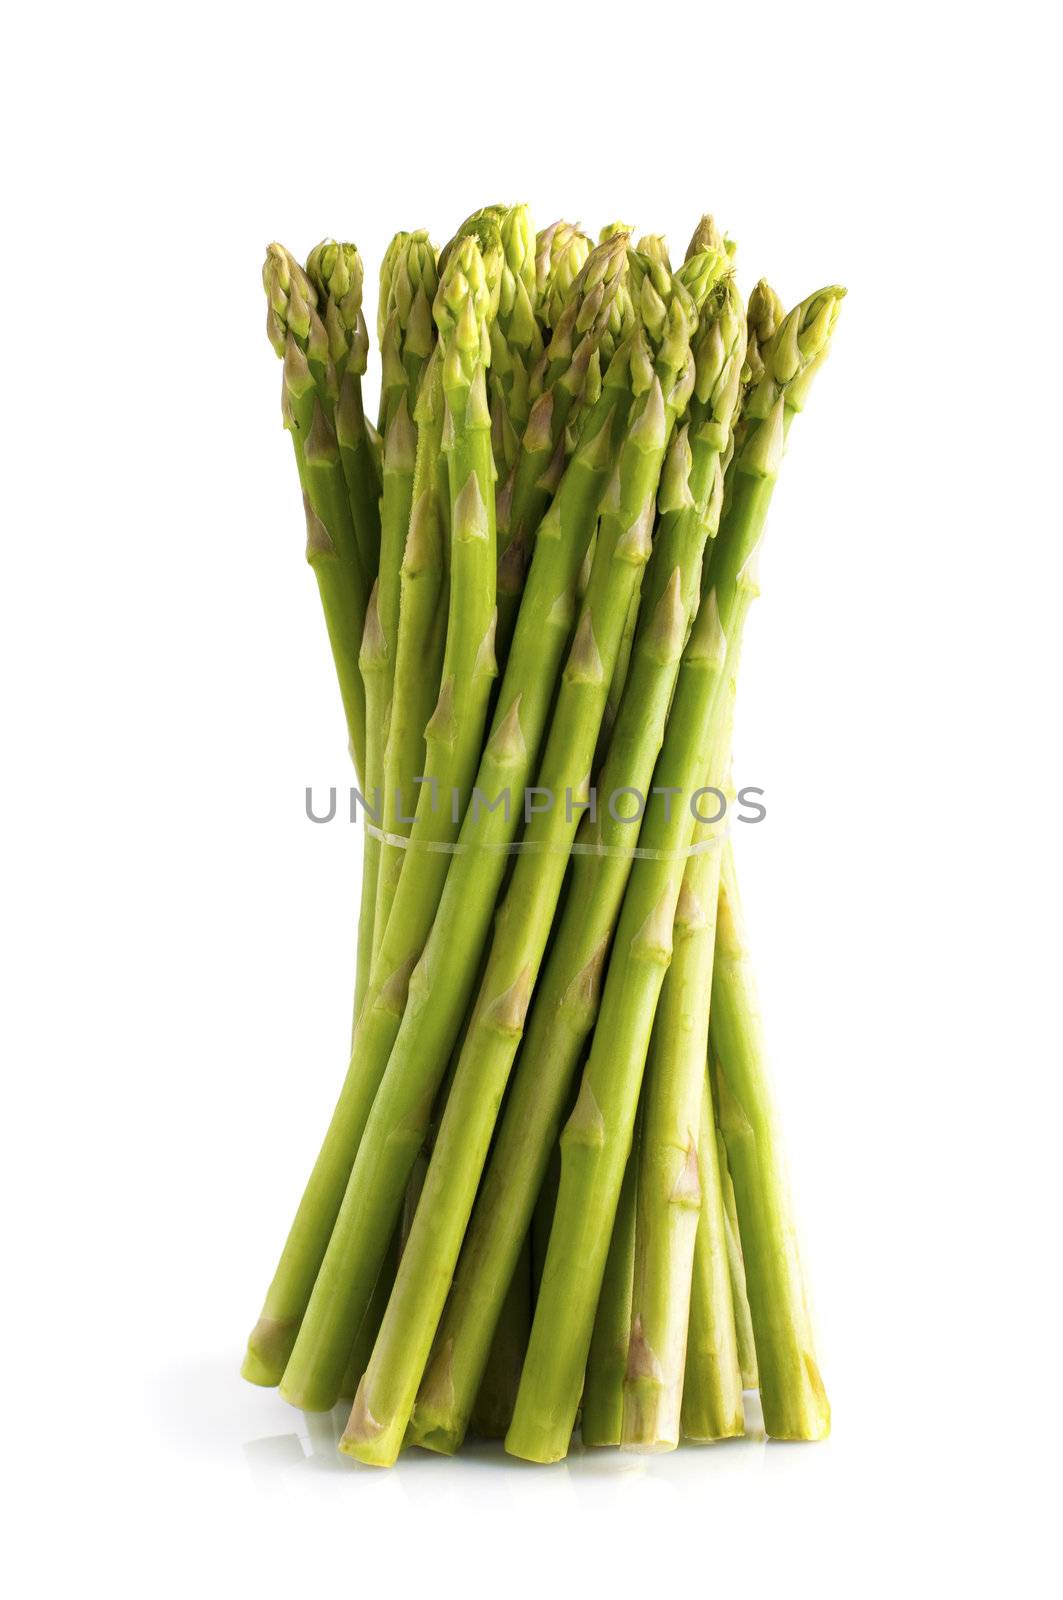 Asparagus by szefei